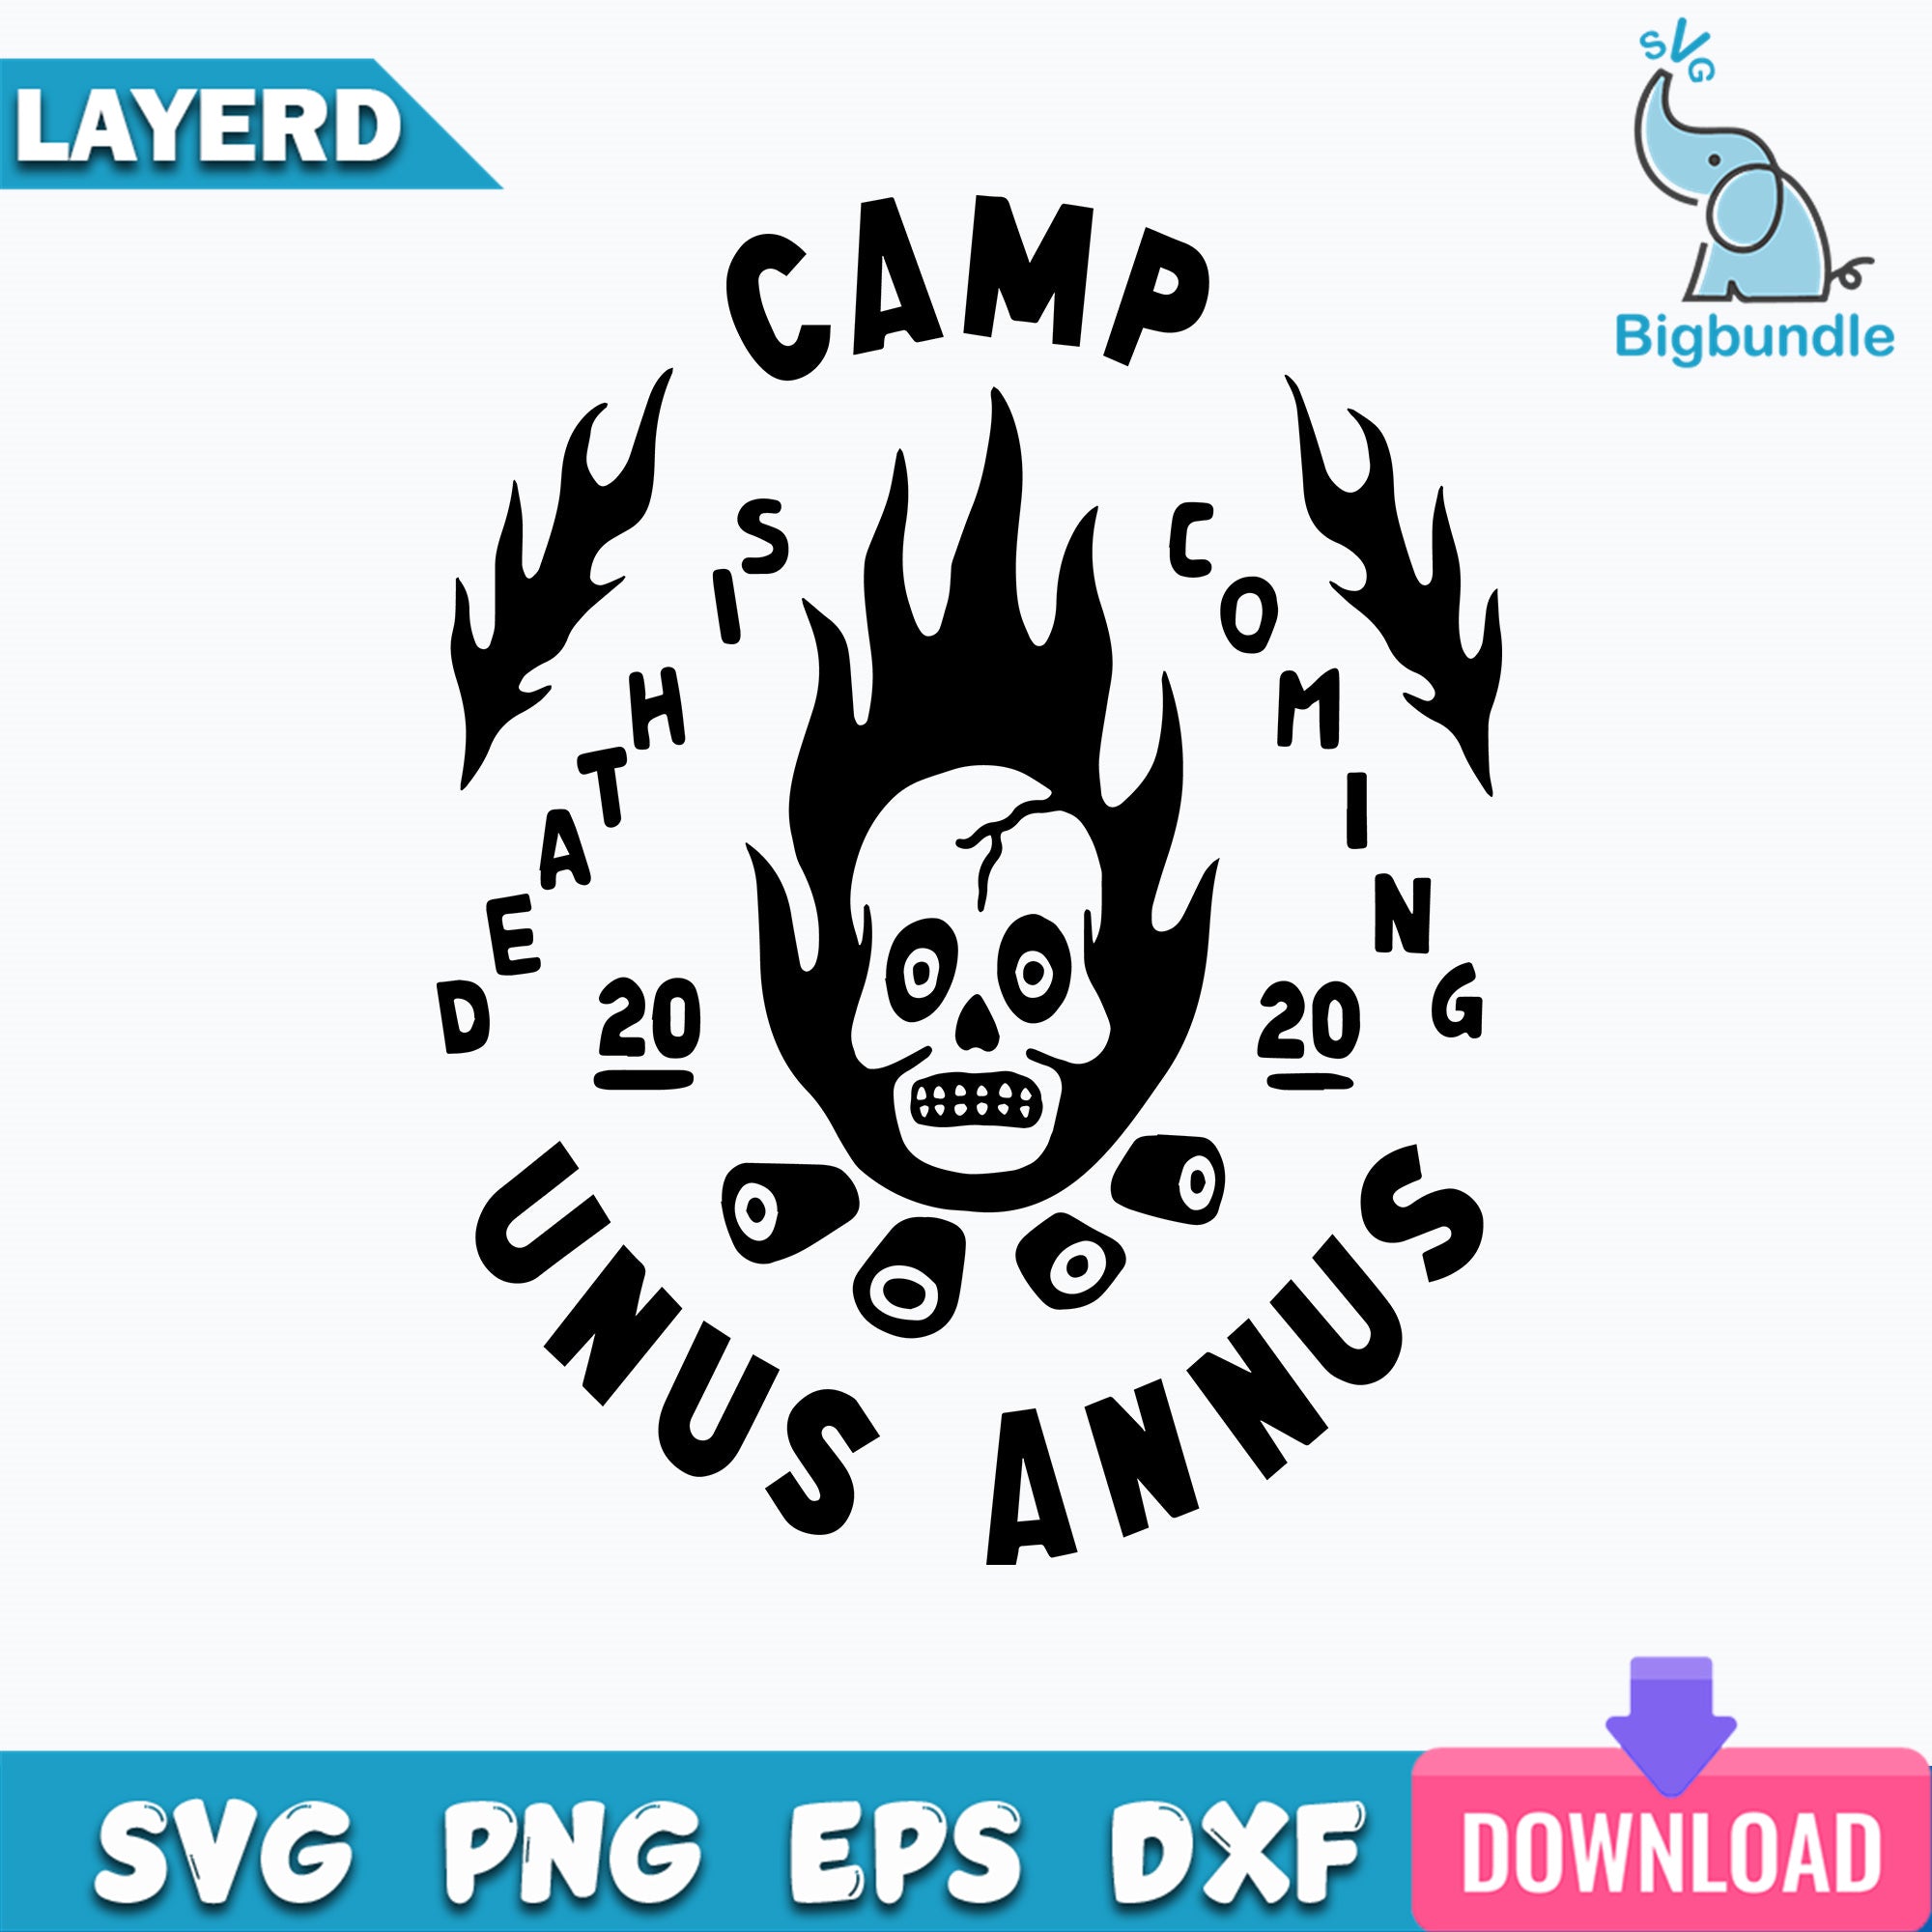 Camp Unus Annus - Death Is Coming 2020 Svg